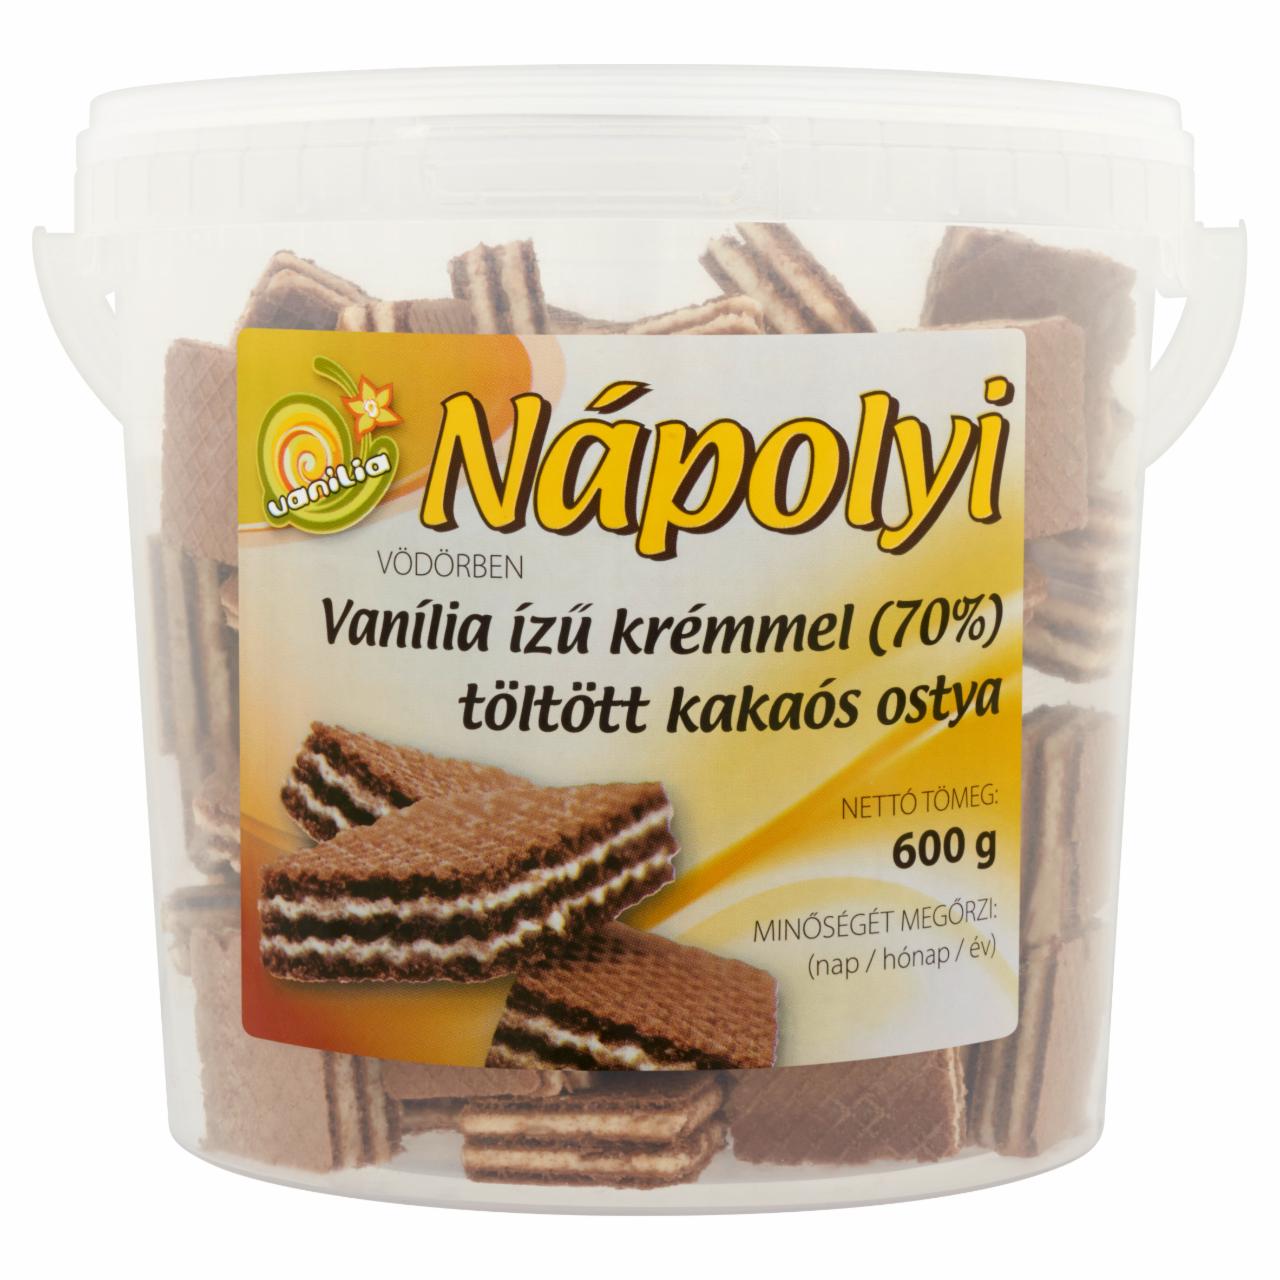 Képek - Nápolyi Vödörben vanília ízű krémmel töltött kakaós ostya 600 g